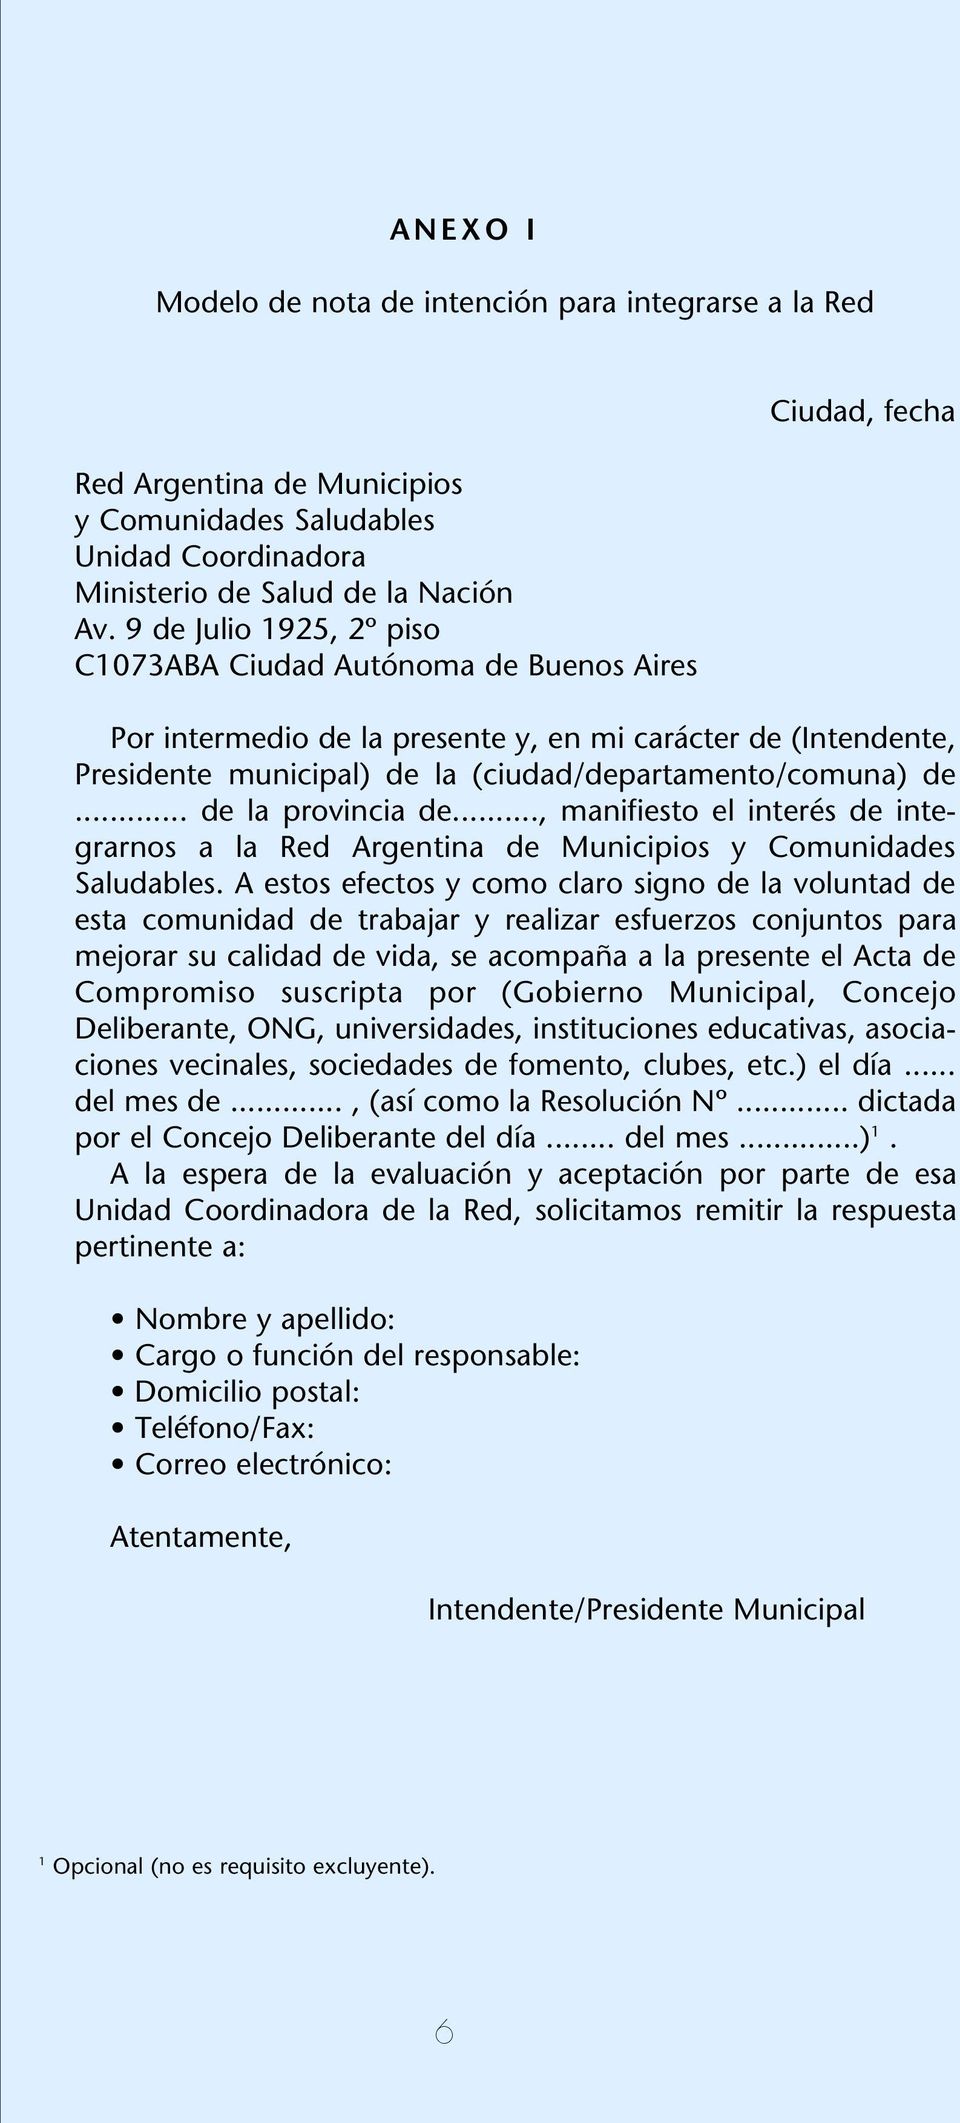 (ciudad/departamento/comuna) de... de la provincia de..., manifiesto el interés de integrarnos a la Red Argentina de Municipios y Comunidades Saludables.